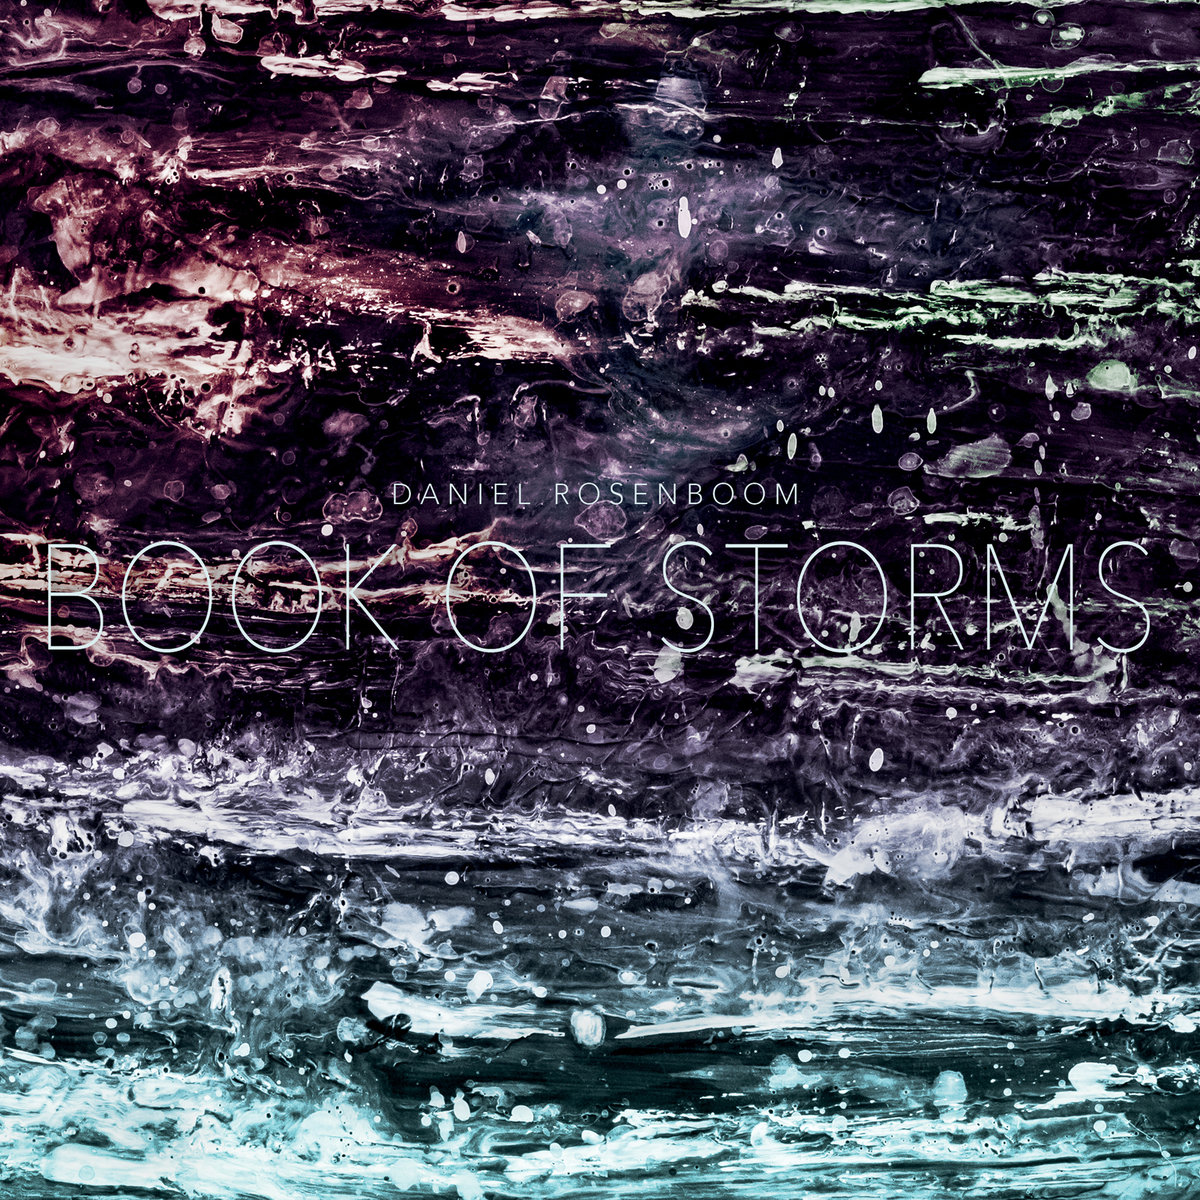 Daniel Rosenboom | Book of Storms